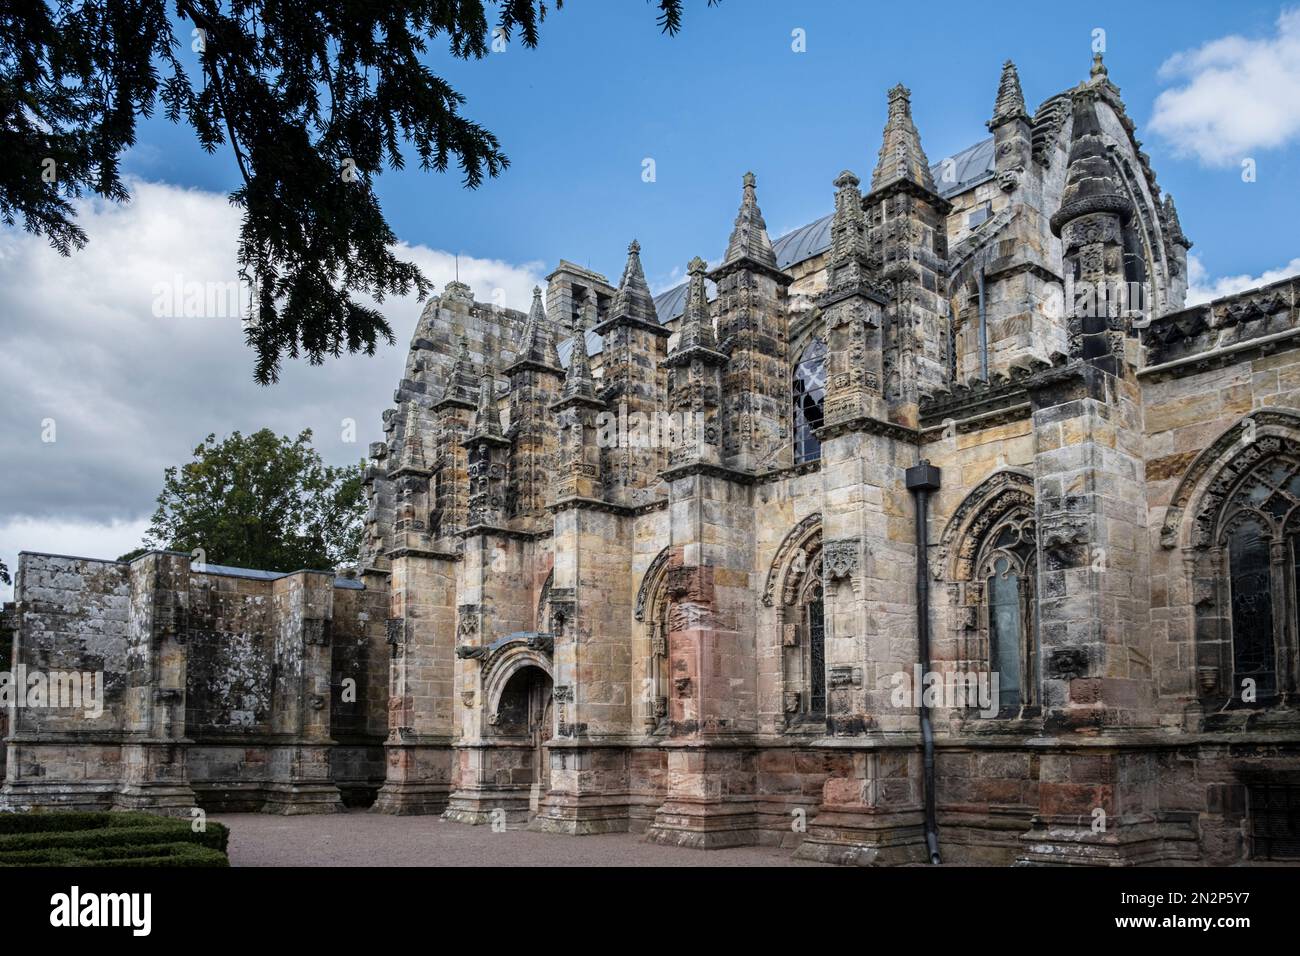 Ecosse, Roslin, Midlothian, Rosslyn Chapel. Extérieur de la chapelle gothique montrant les contreforts volants. Personne. Banque D'Images